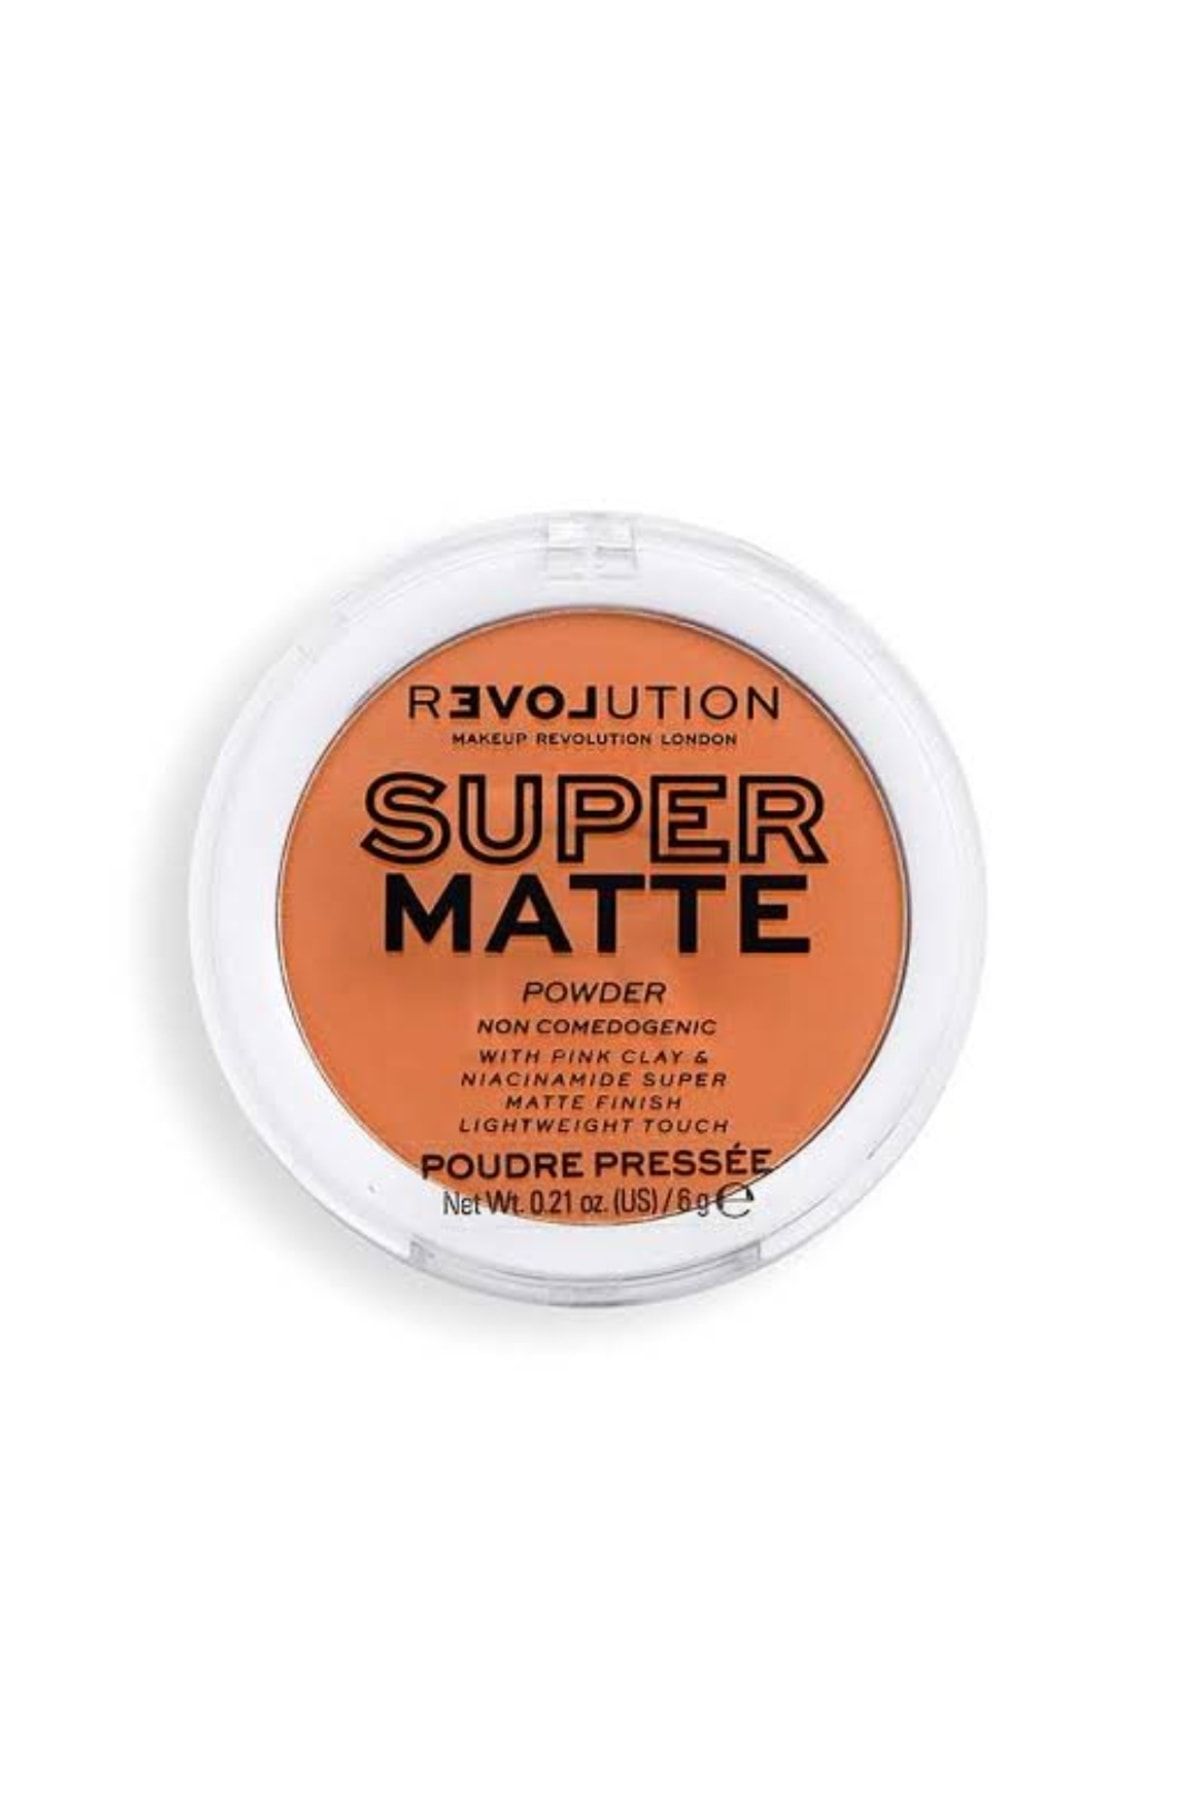 Revolution Super Matte Powder Dark Tan